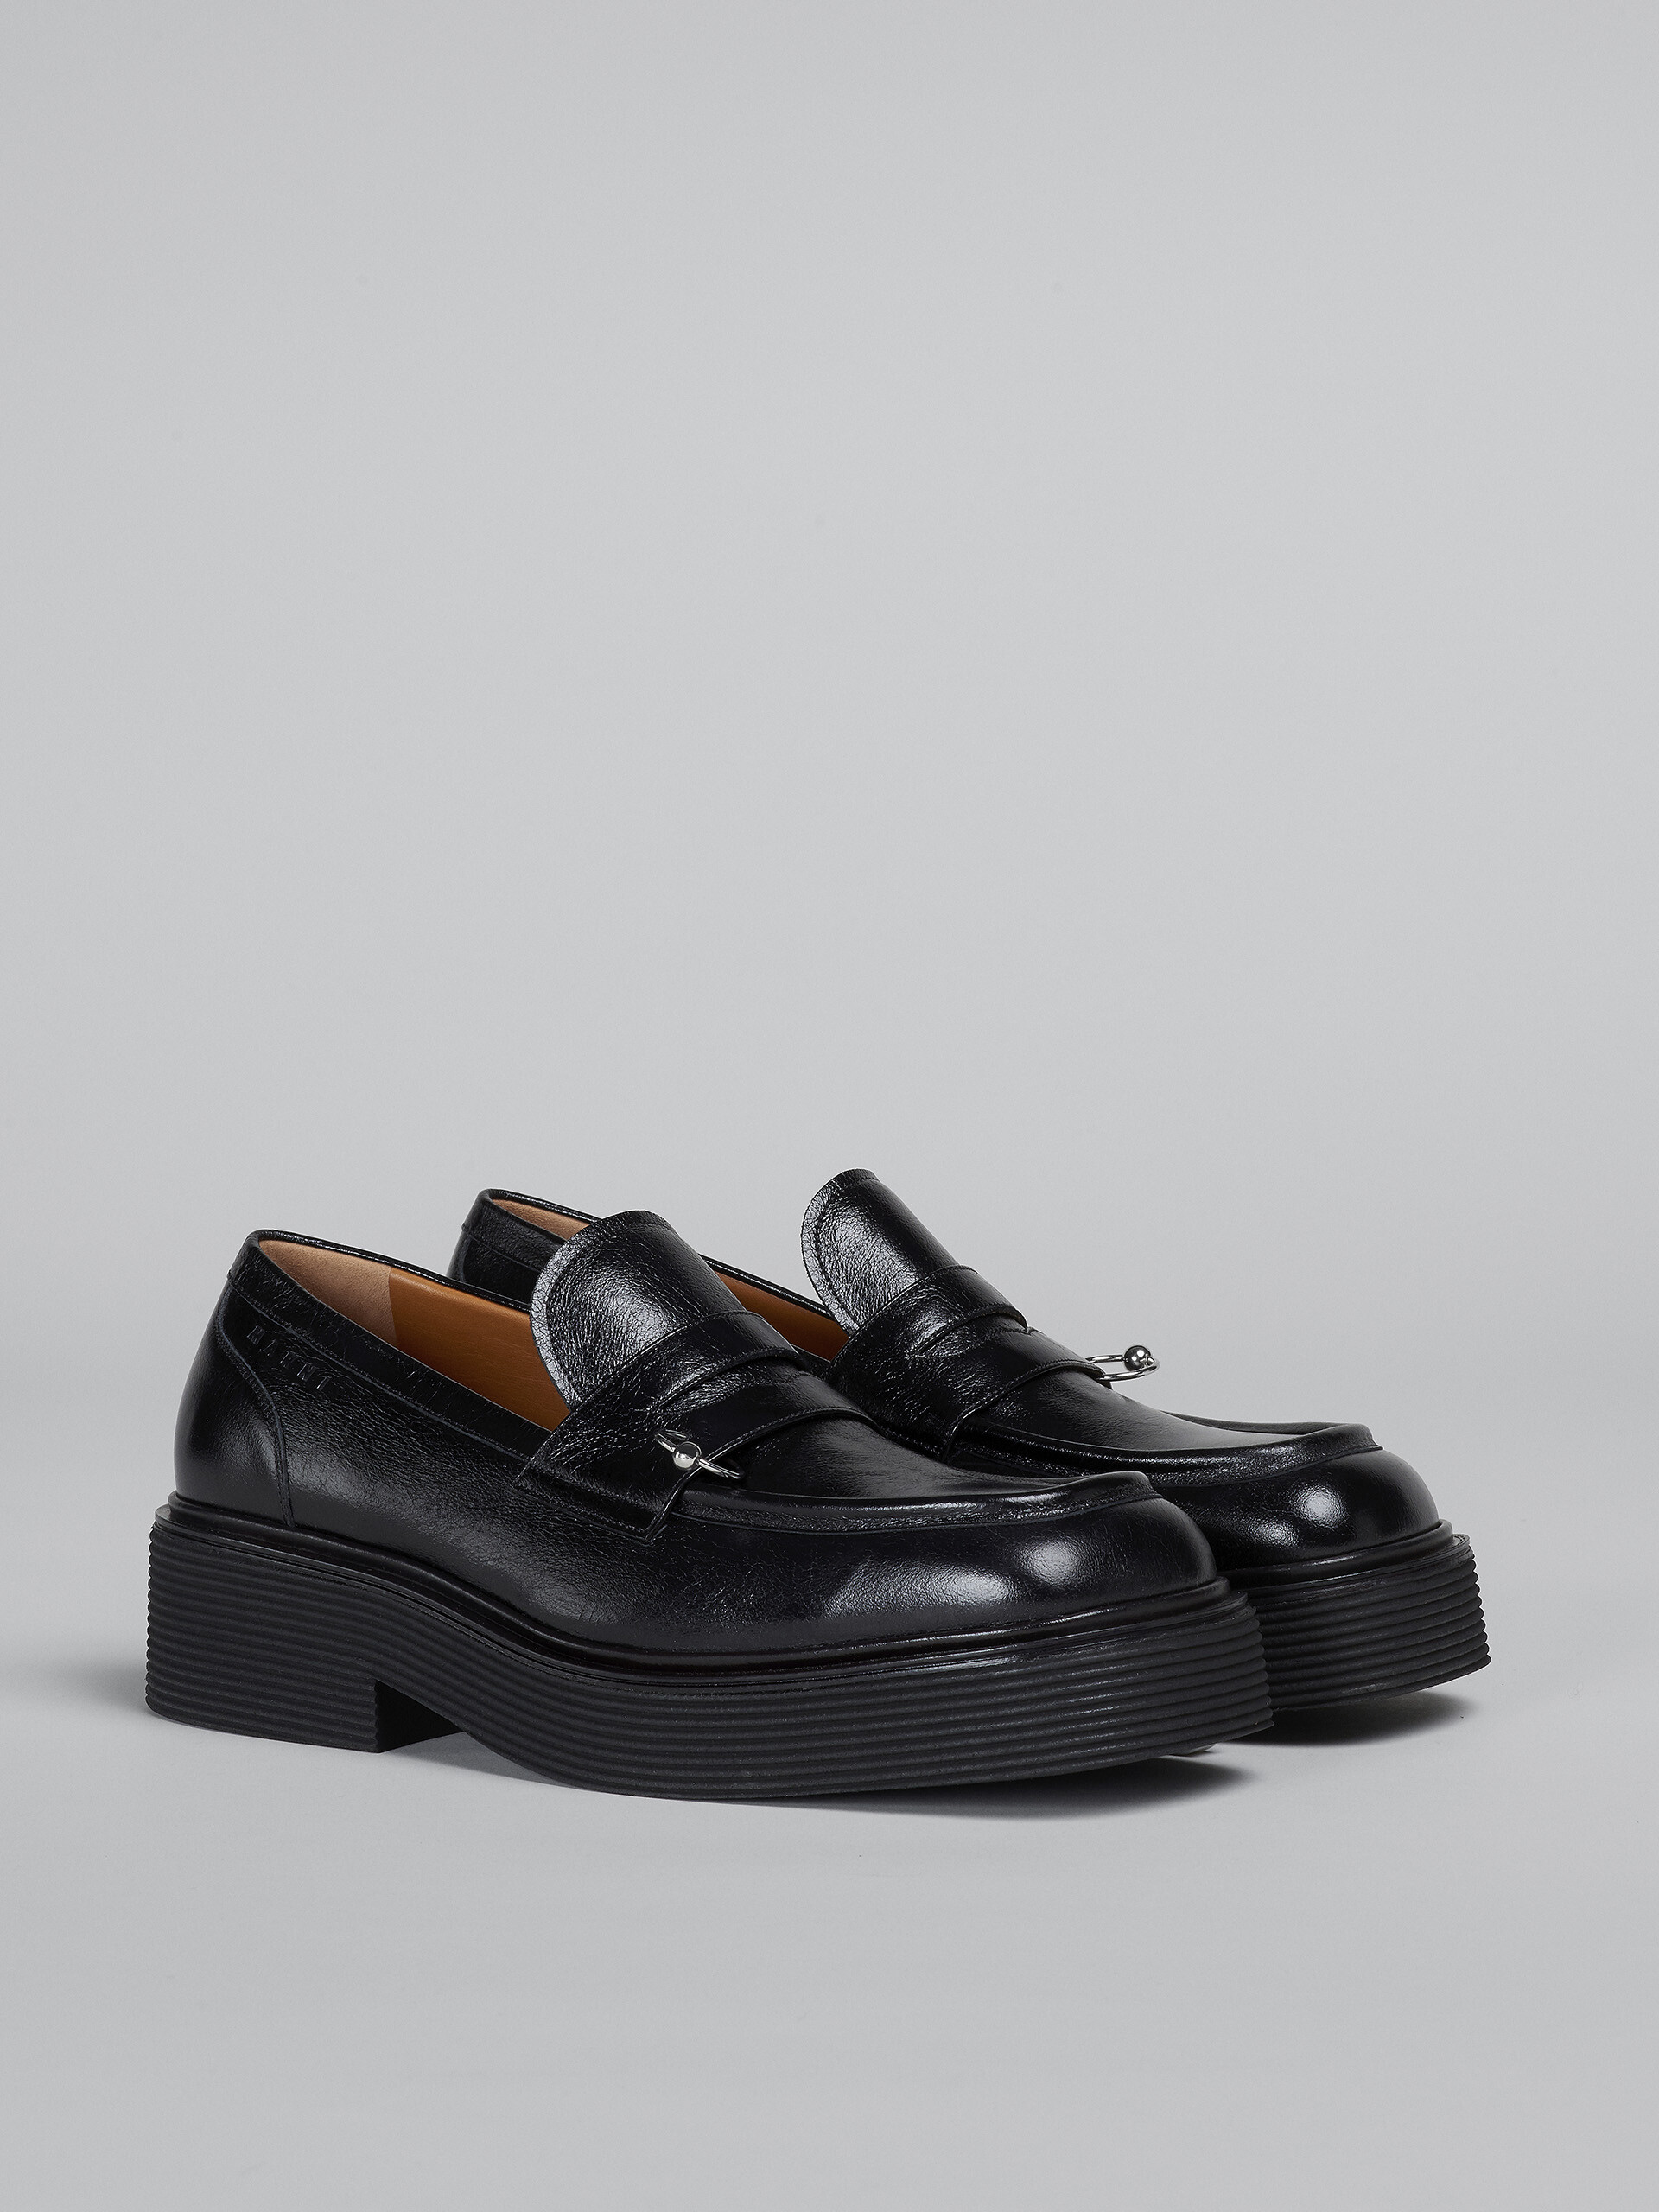 Mocasín de piel brillante negra - Zapatos con cordones - Image 2